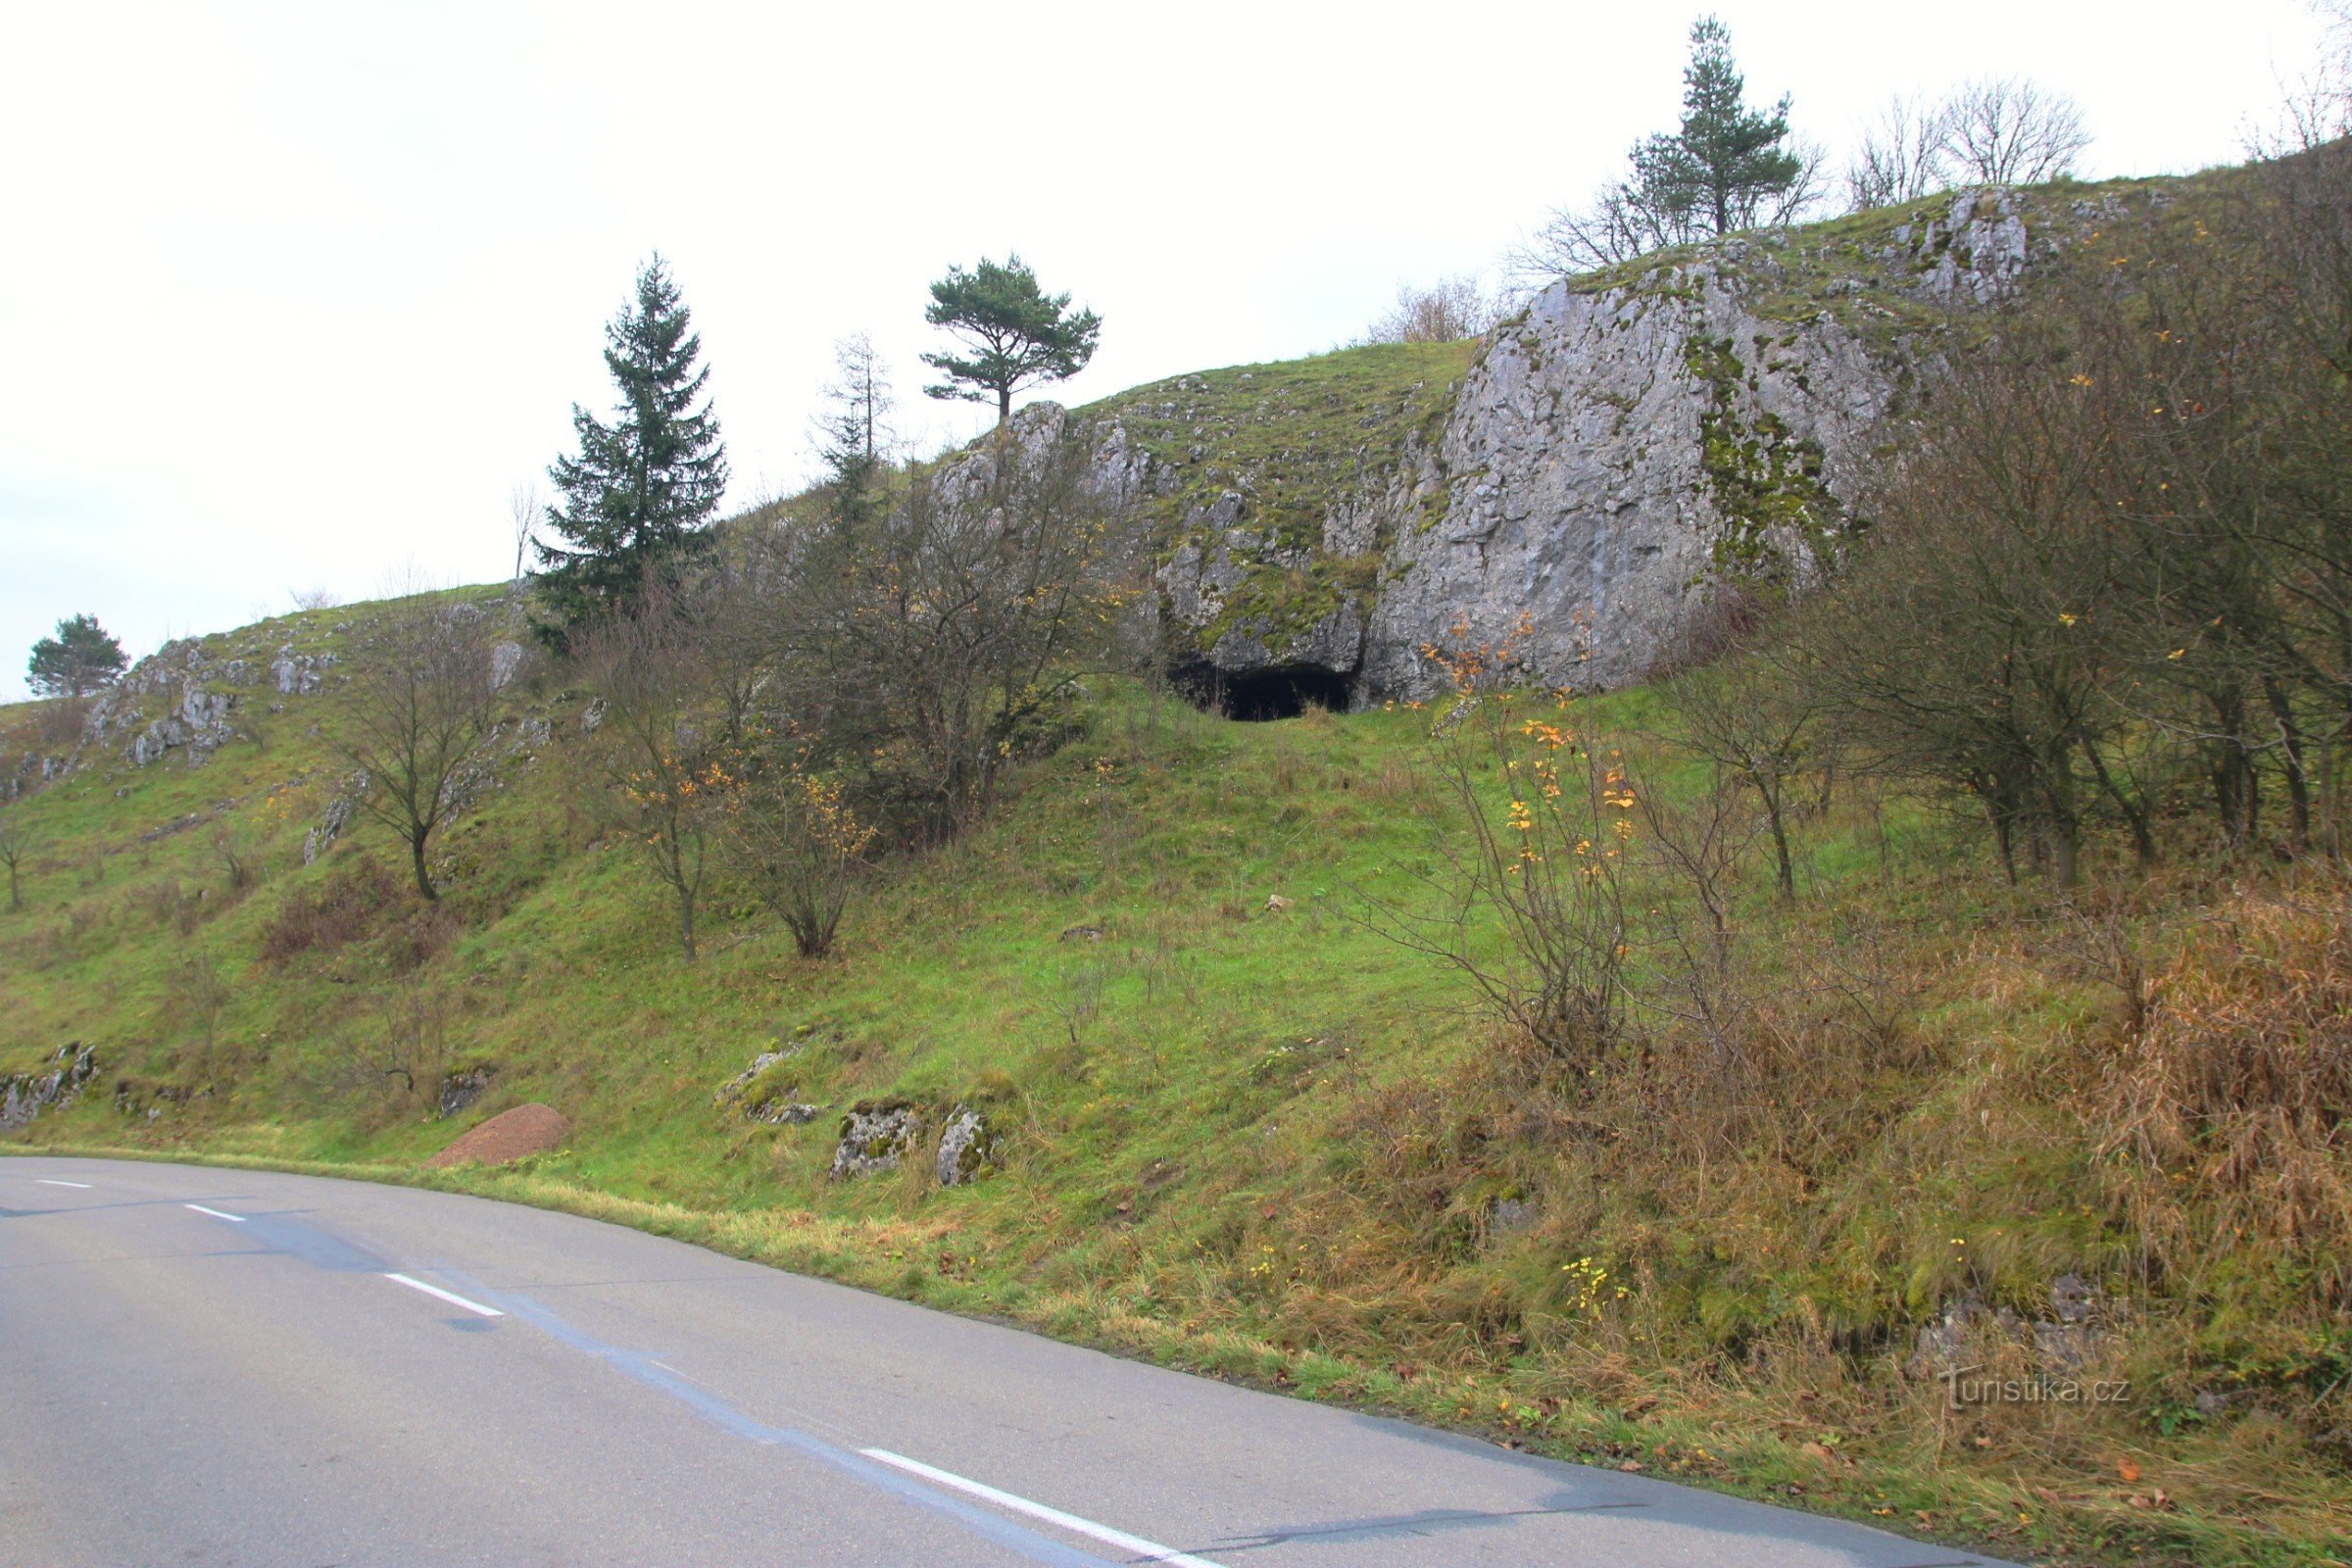 La entrada de la cueva es fácilmente visible desde la carretera.